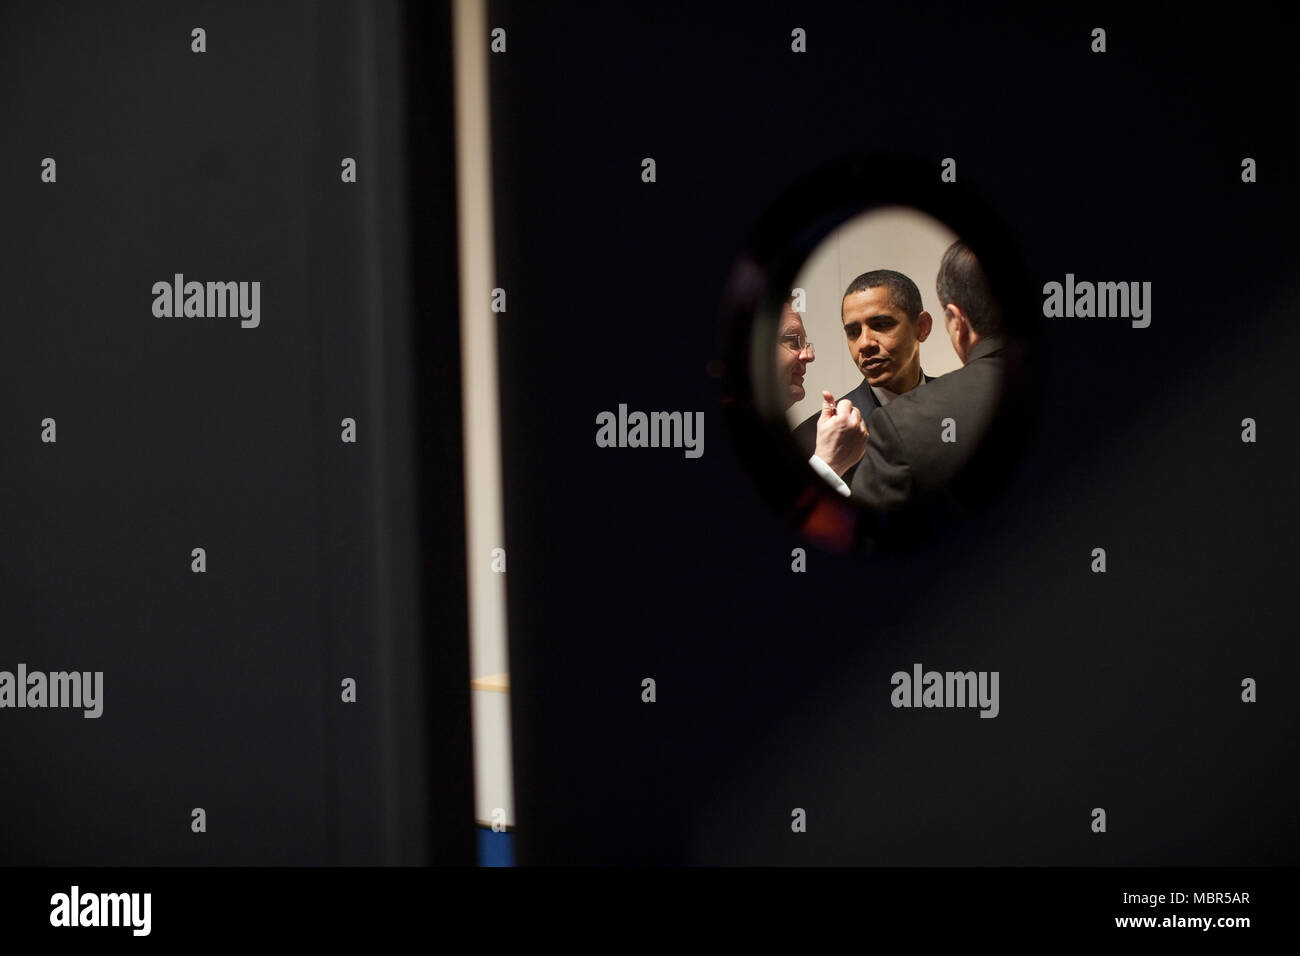 Präsident Barack Obama wird durch eine ovale Fenster gesehen, wie er sich mit leitenden Mitarbeitern Robert Gibbs, links, und David Axelrod nach einer Pressekonferenz auf dem G20-Gipfel im ExCel Centre in London trifft. Offiziellen White House Photo by Pete Souza Stockfoto